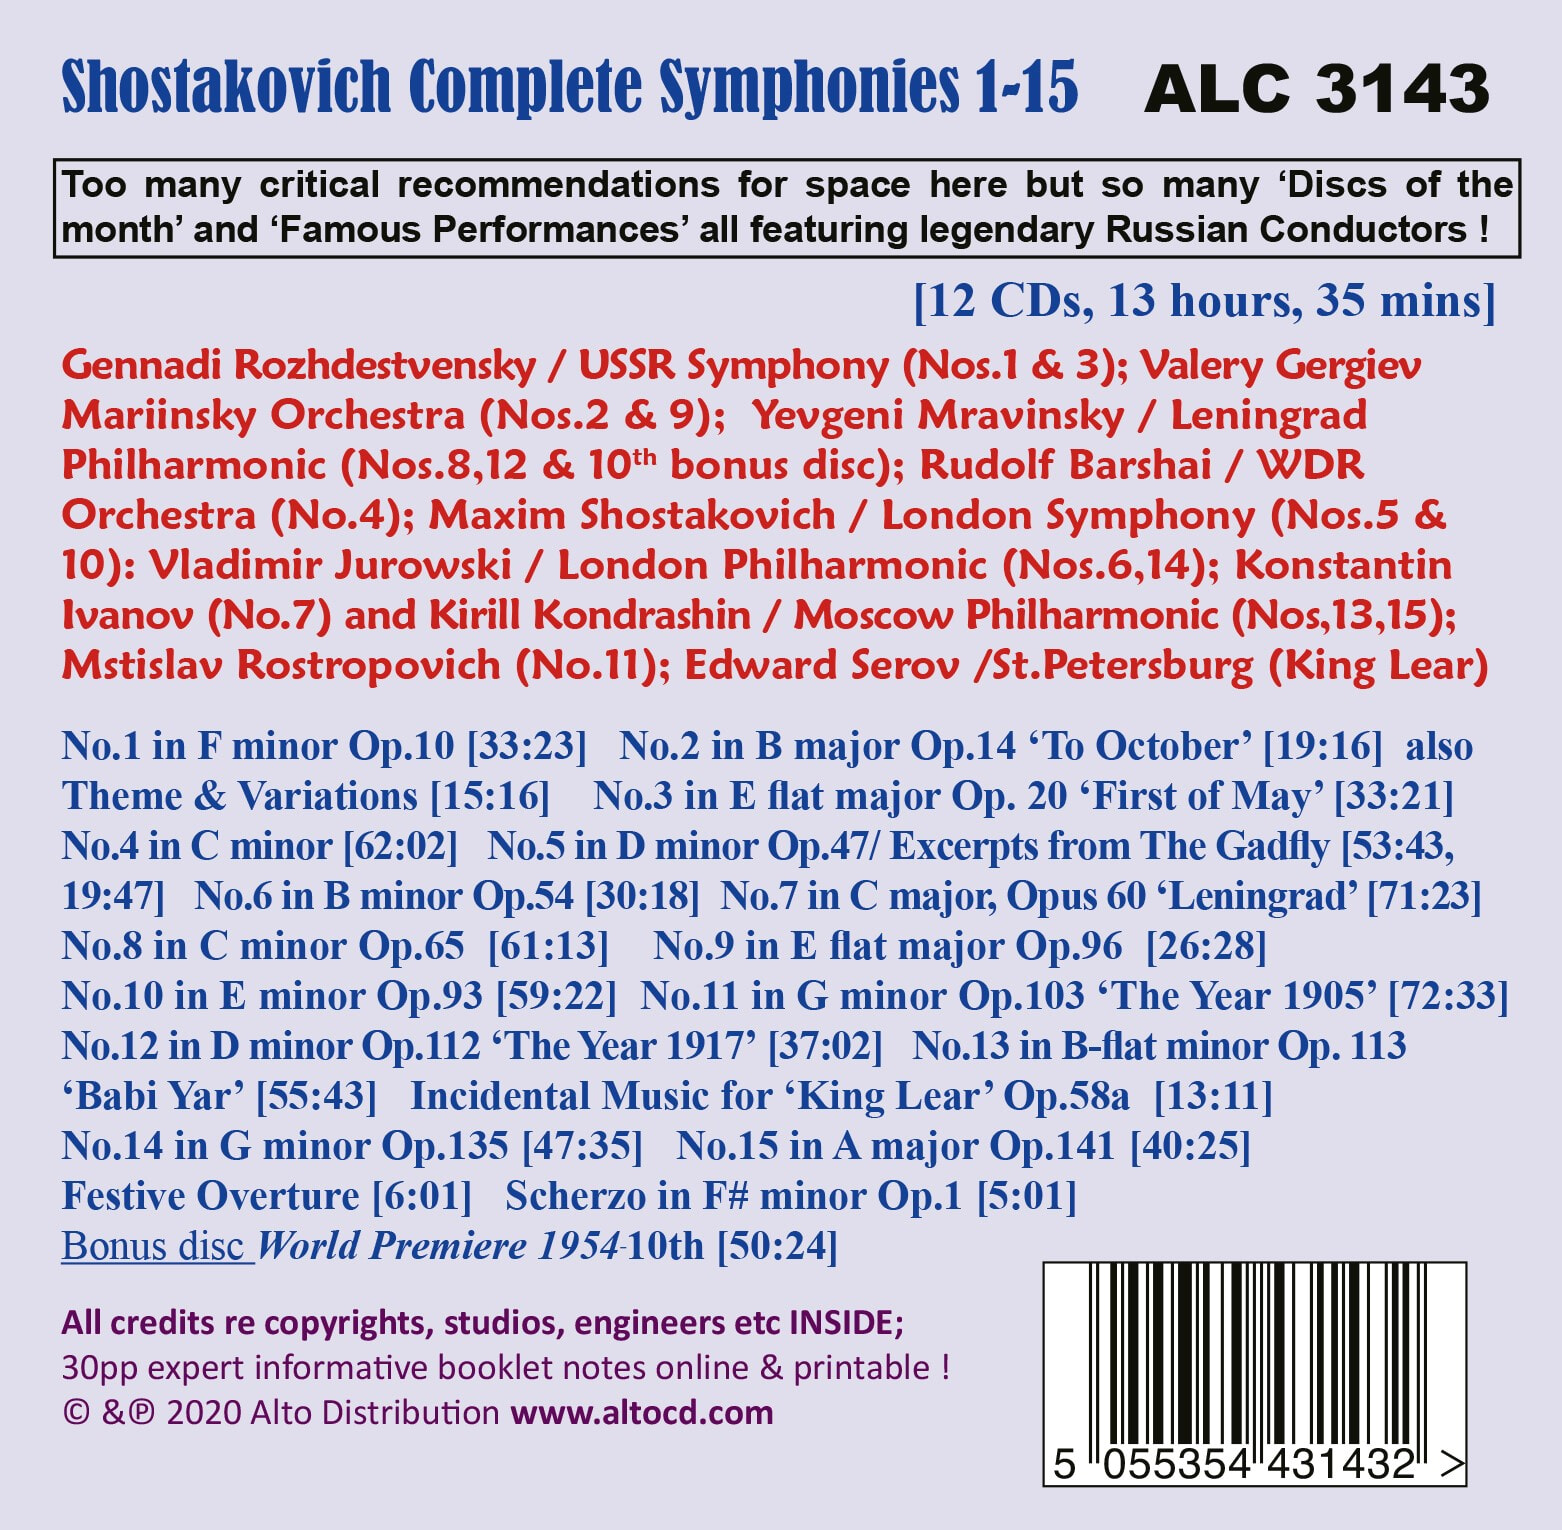 러시아 명지휘자들이 지휘하는 쇼스타코비치 교향곡 전곡집 (Shostakovich: Complete 15 Symphonies by Great Russian Conductors) 